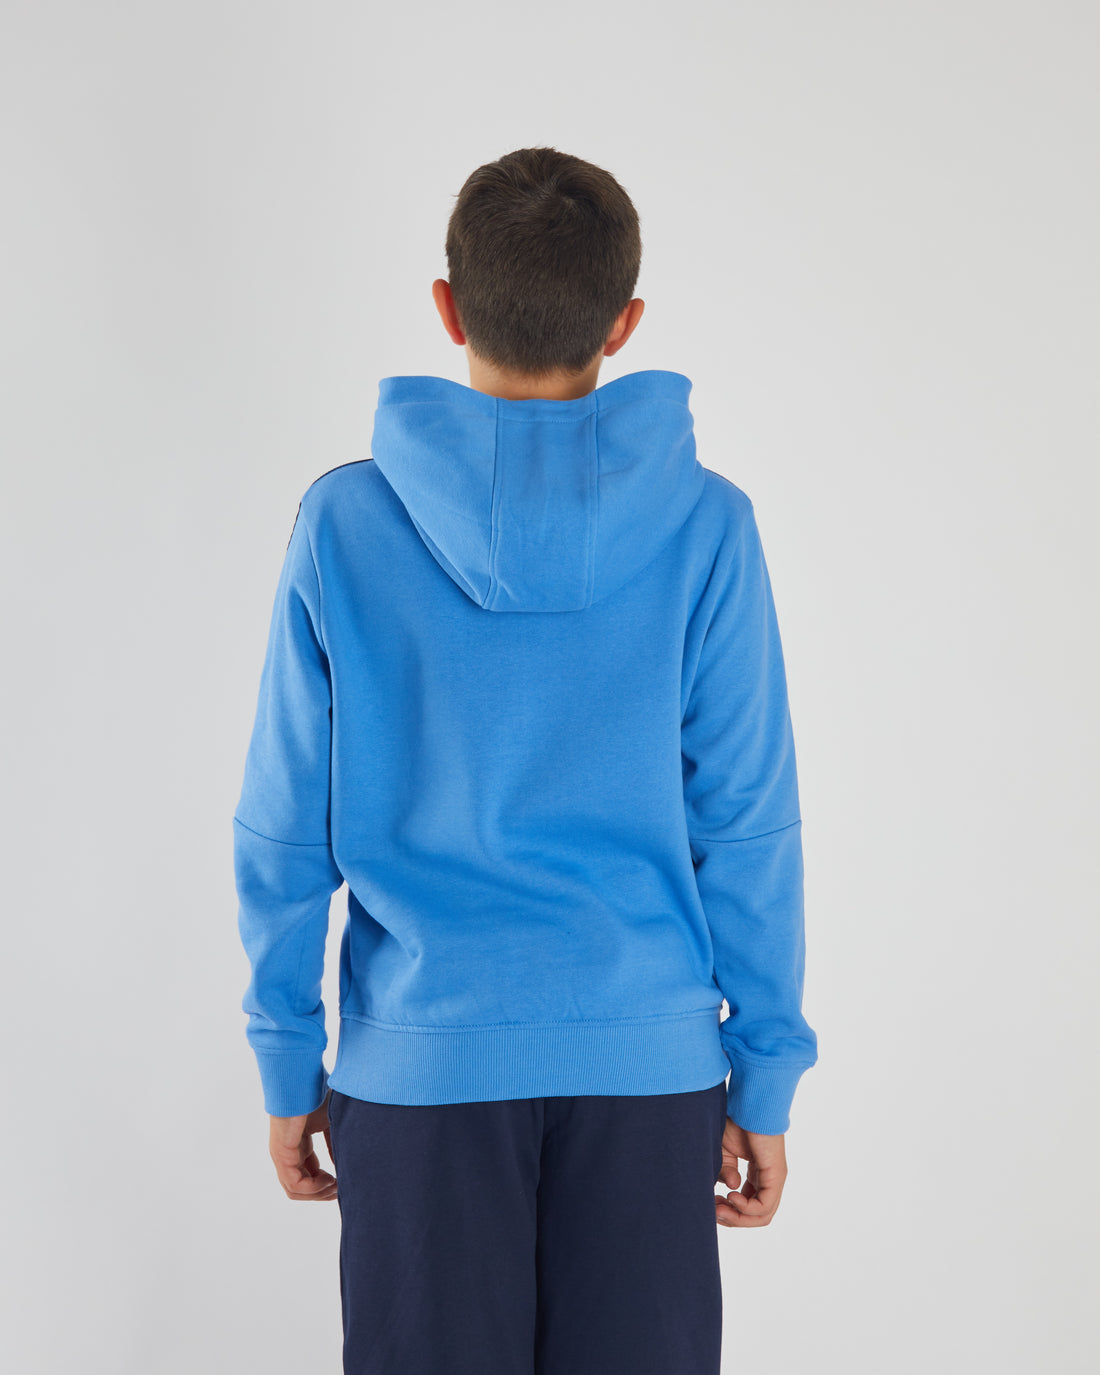 Boy's Barron Blue Hood-Model Back View